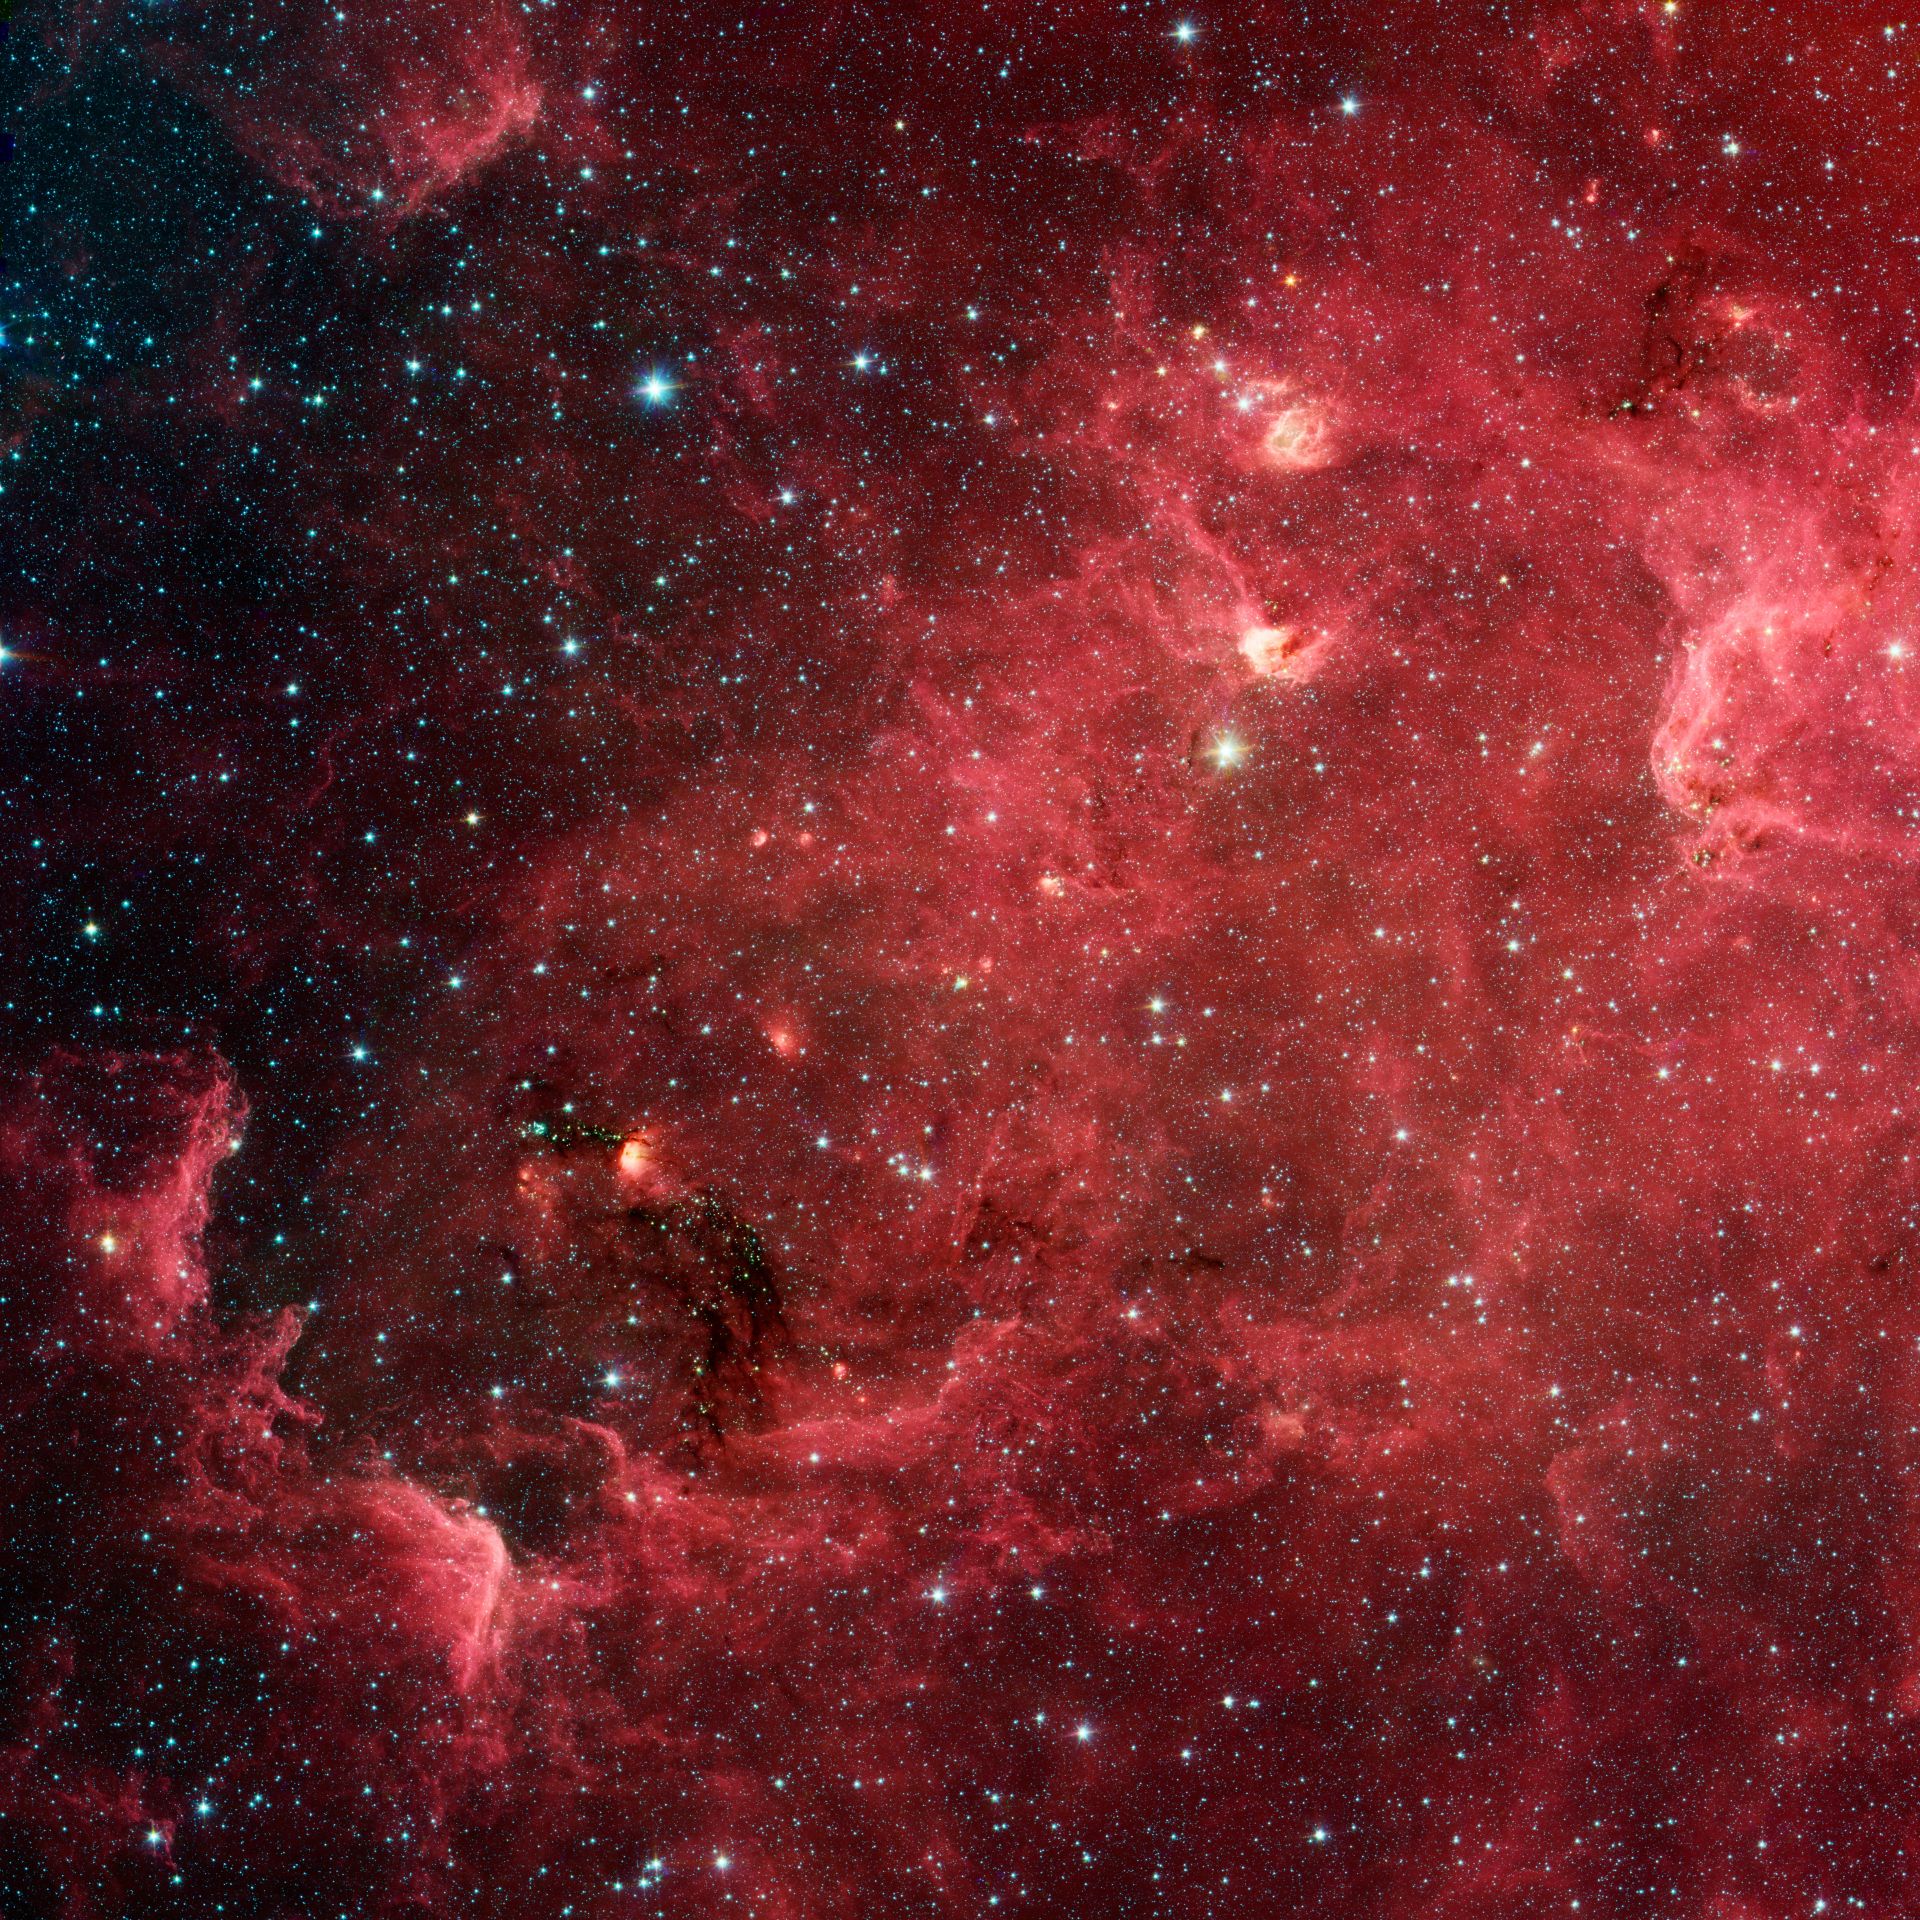  North America Nebula